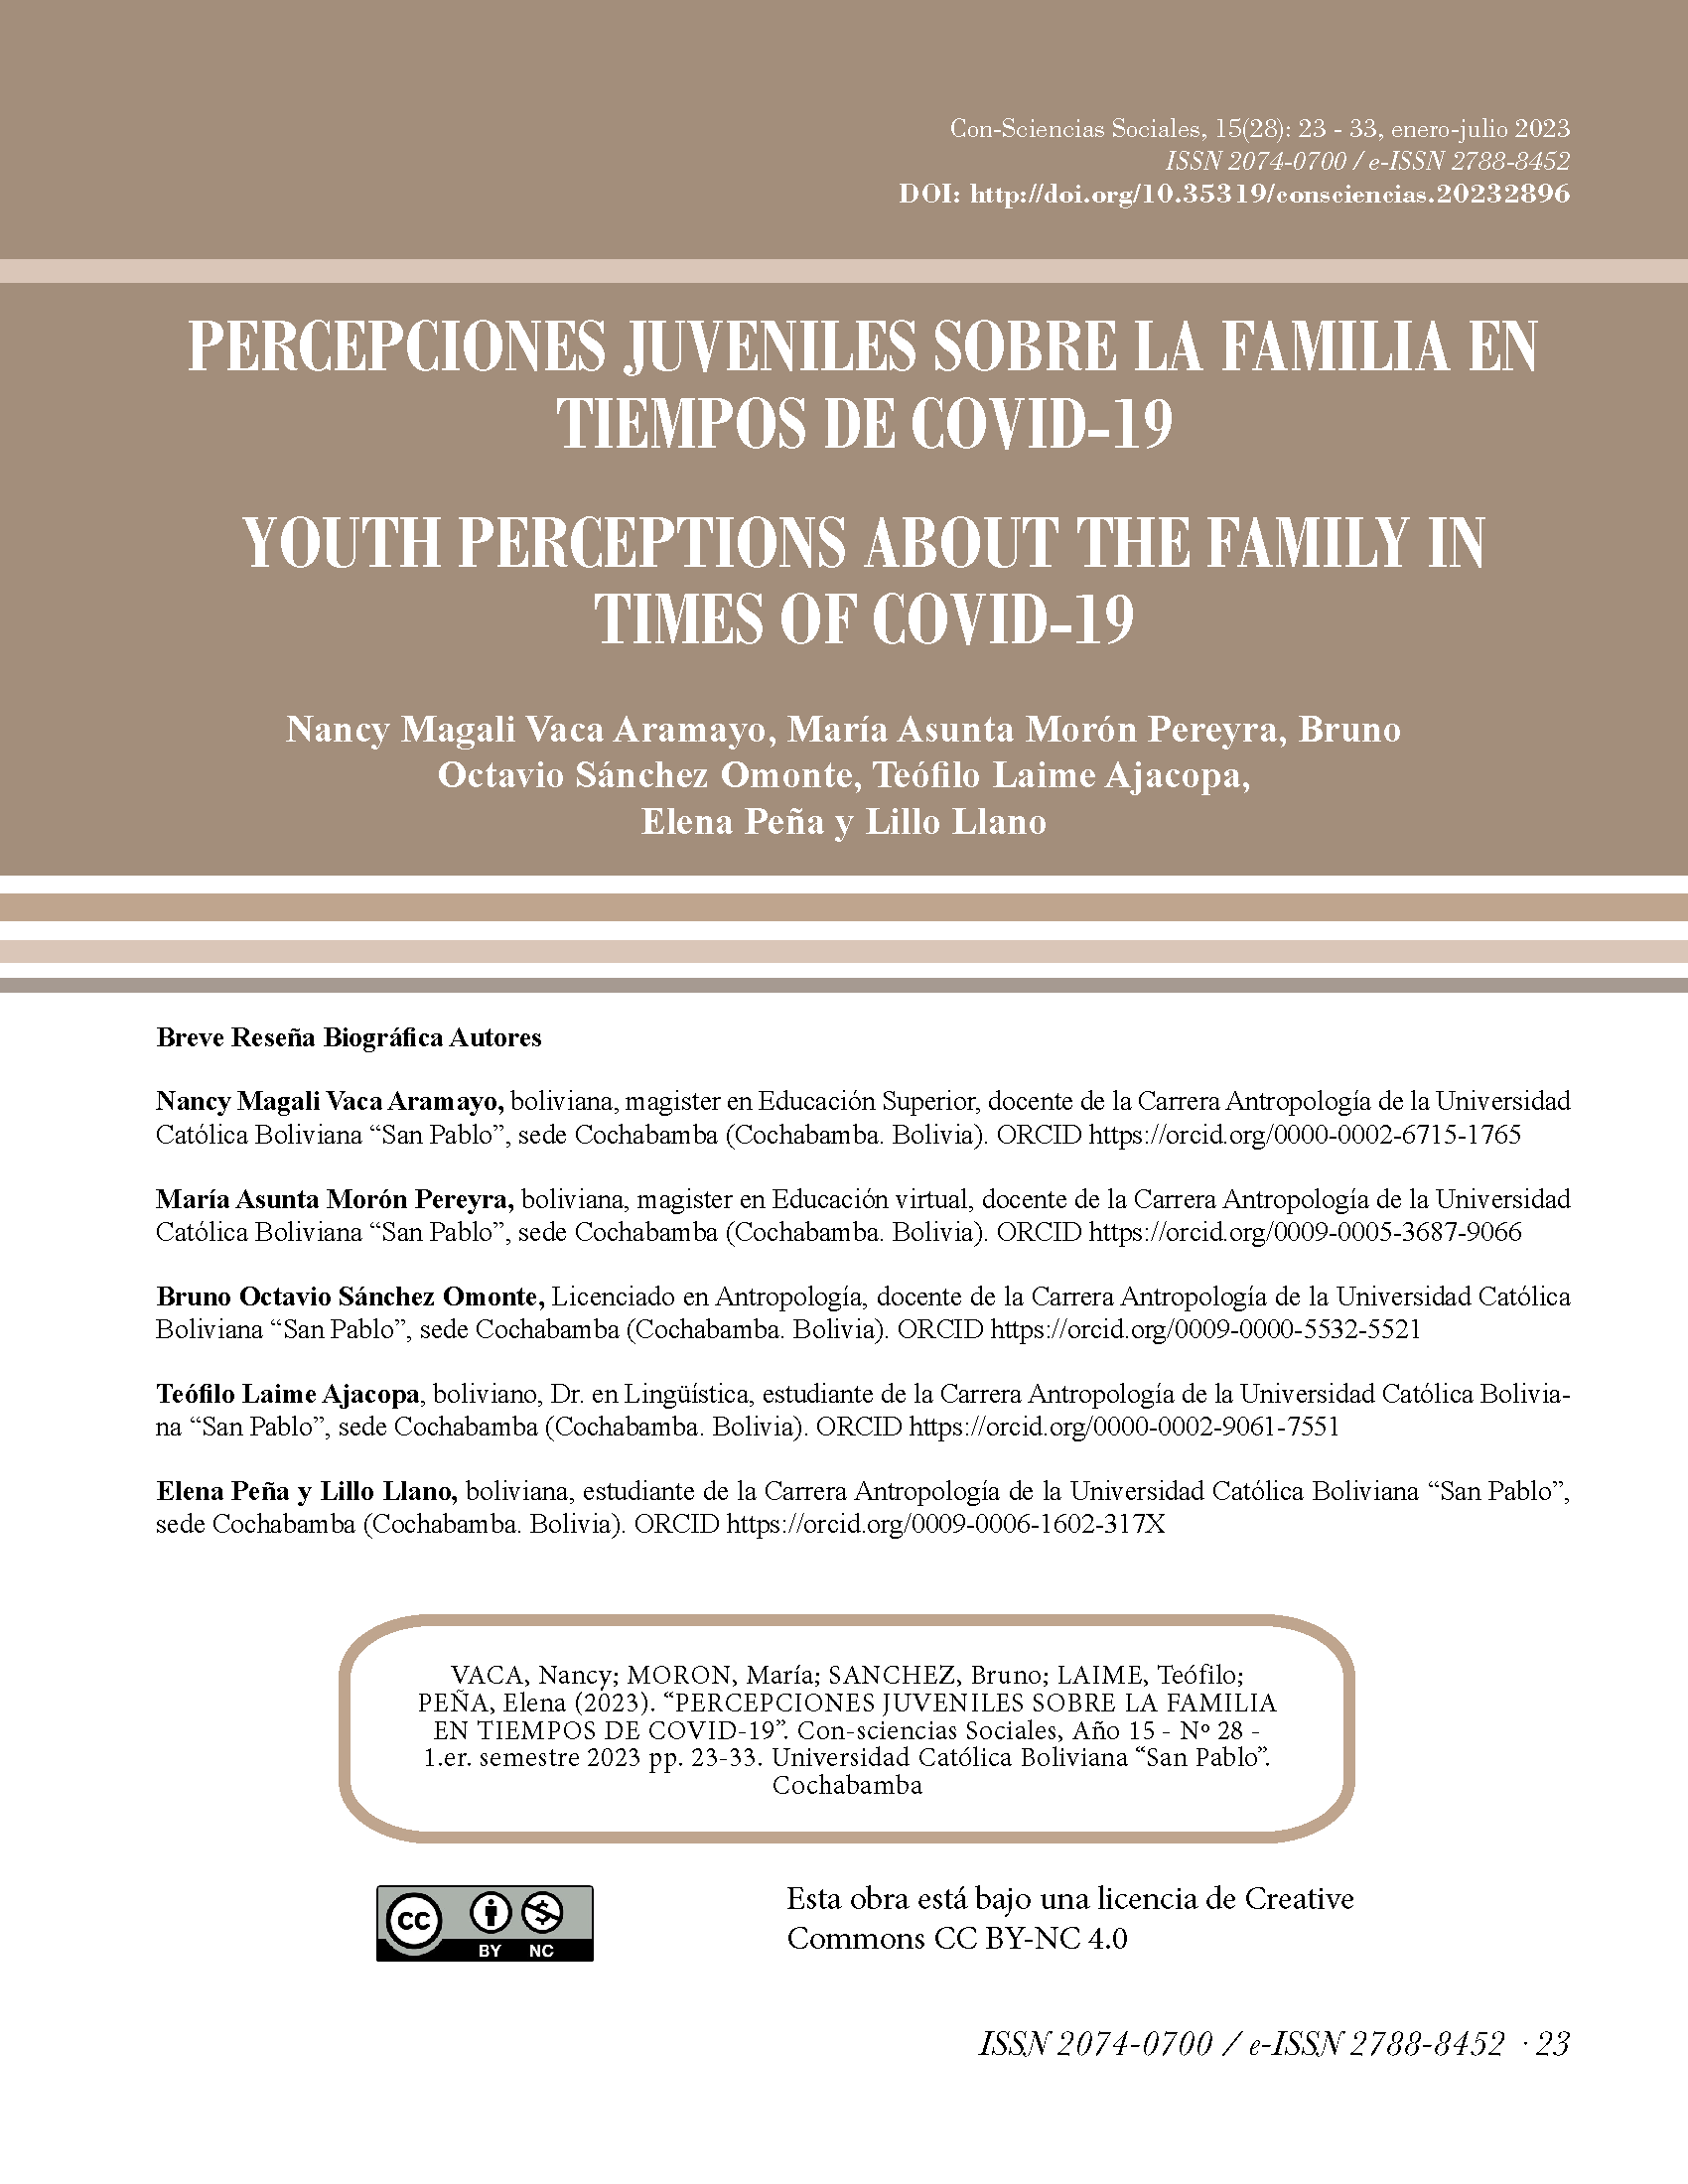 Percepciones juveniles sobre la familia en tiempos de COVID-19